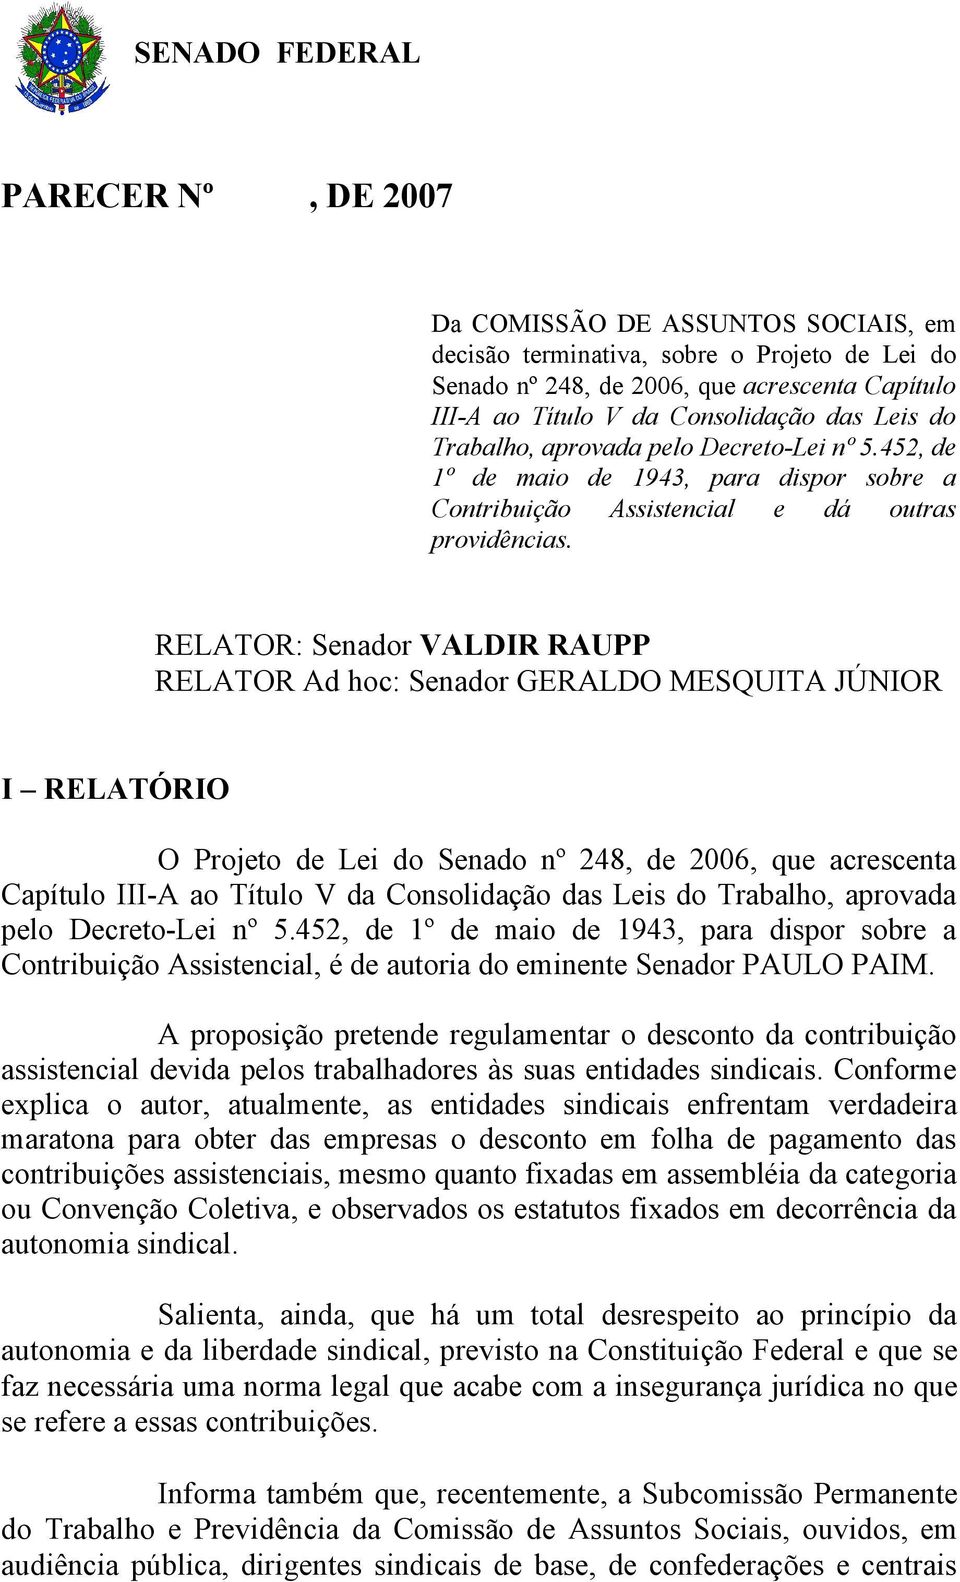 RELATOR: Senador VALDIR RAUPP RELATOR Ad hoc: Senador GERALDO MESQUITA JÚNIOR I RELATÓRIO O Projeto de Lei do Senado nº 248, de 2006, que acrescenta Capítulo III-A ao Título V da Consolidação das